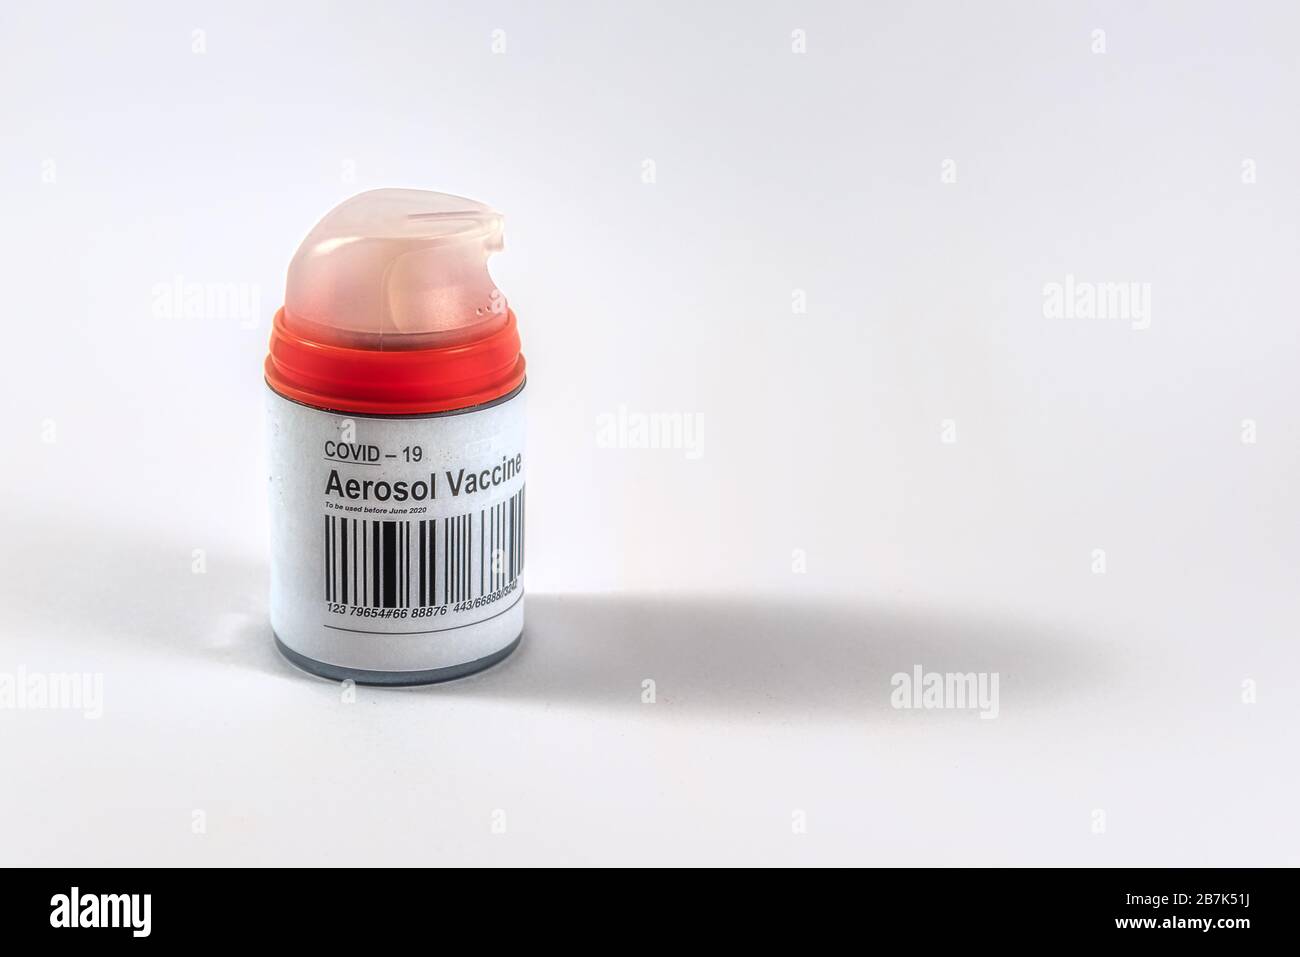 Coronavirus aerosol vaccine???  in a red bottle against white background, Denmark, Mars 17, 2020 Stock Photo